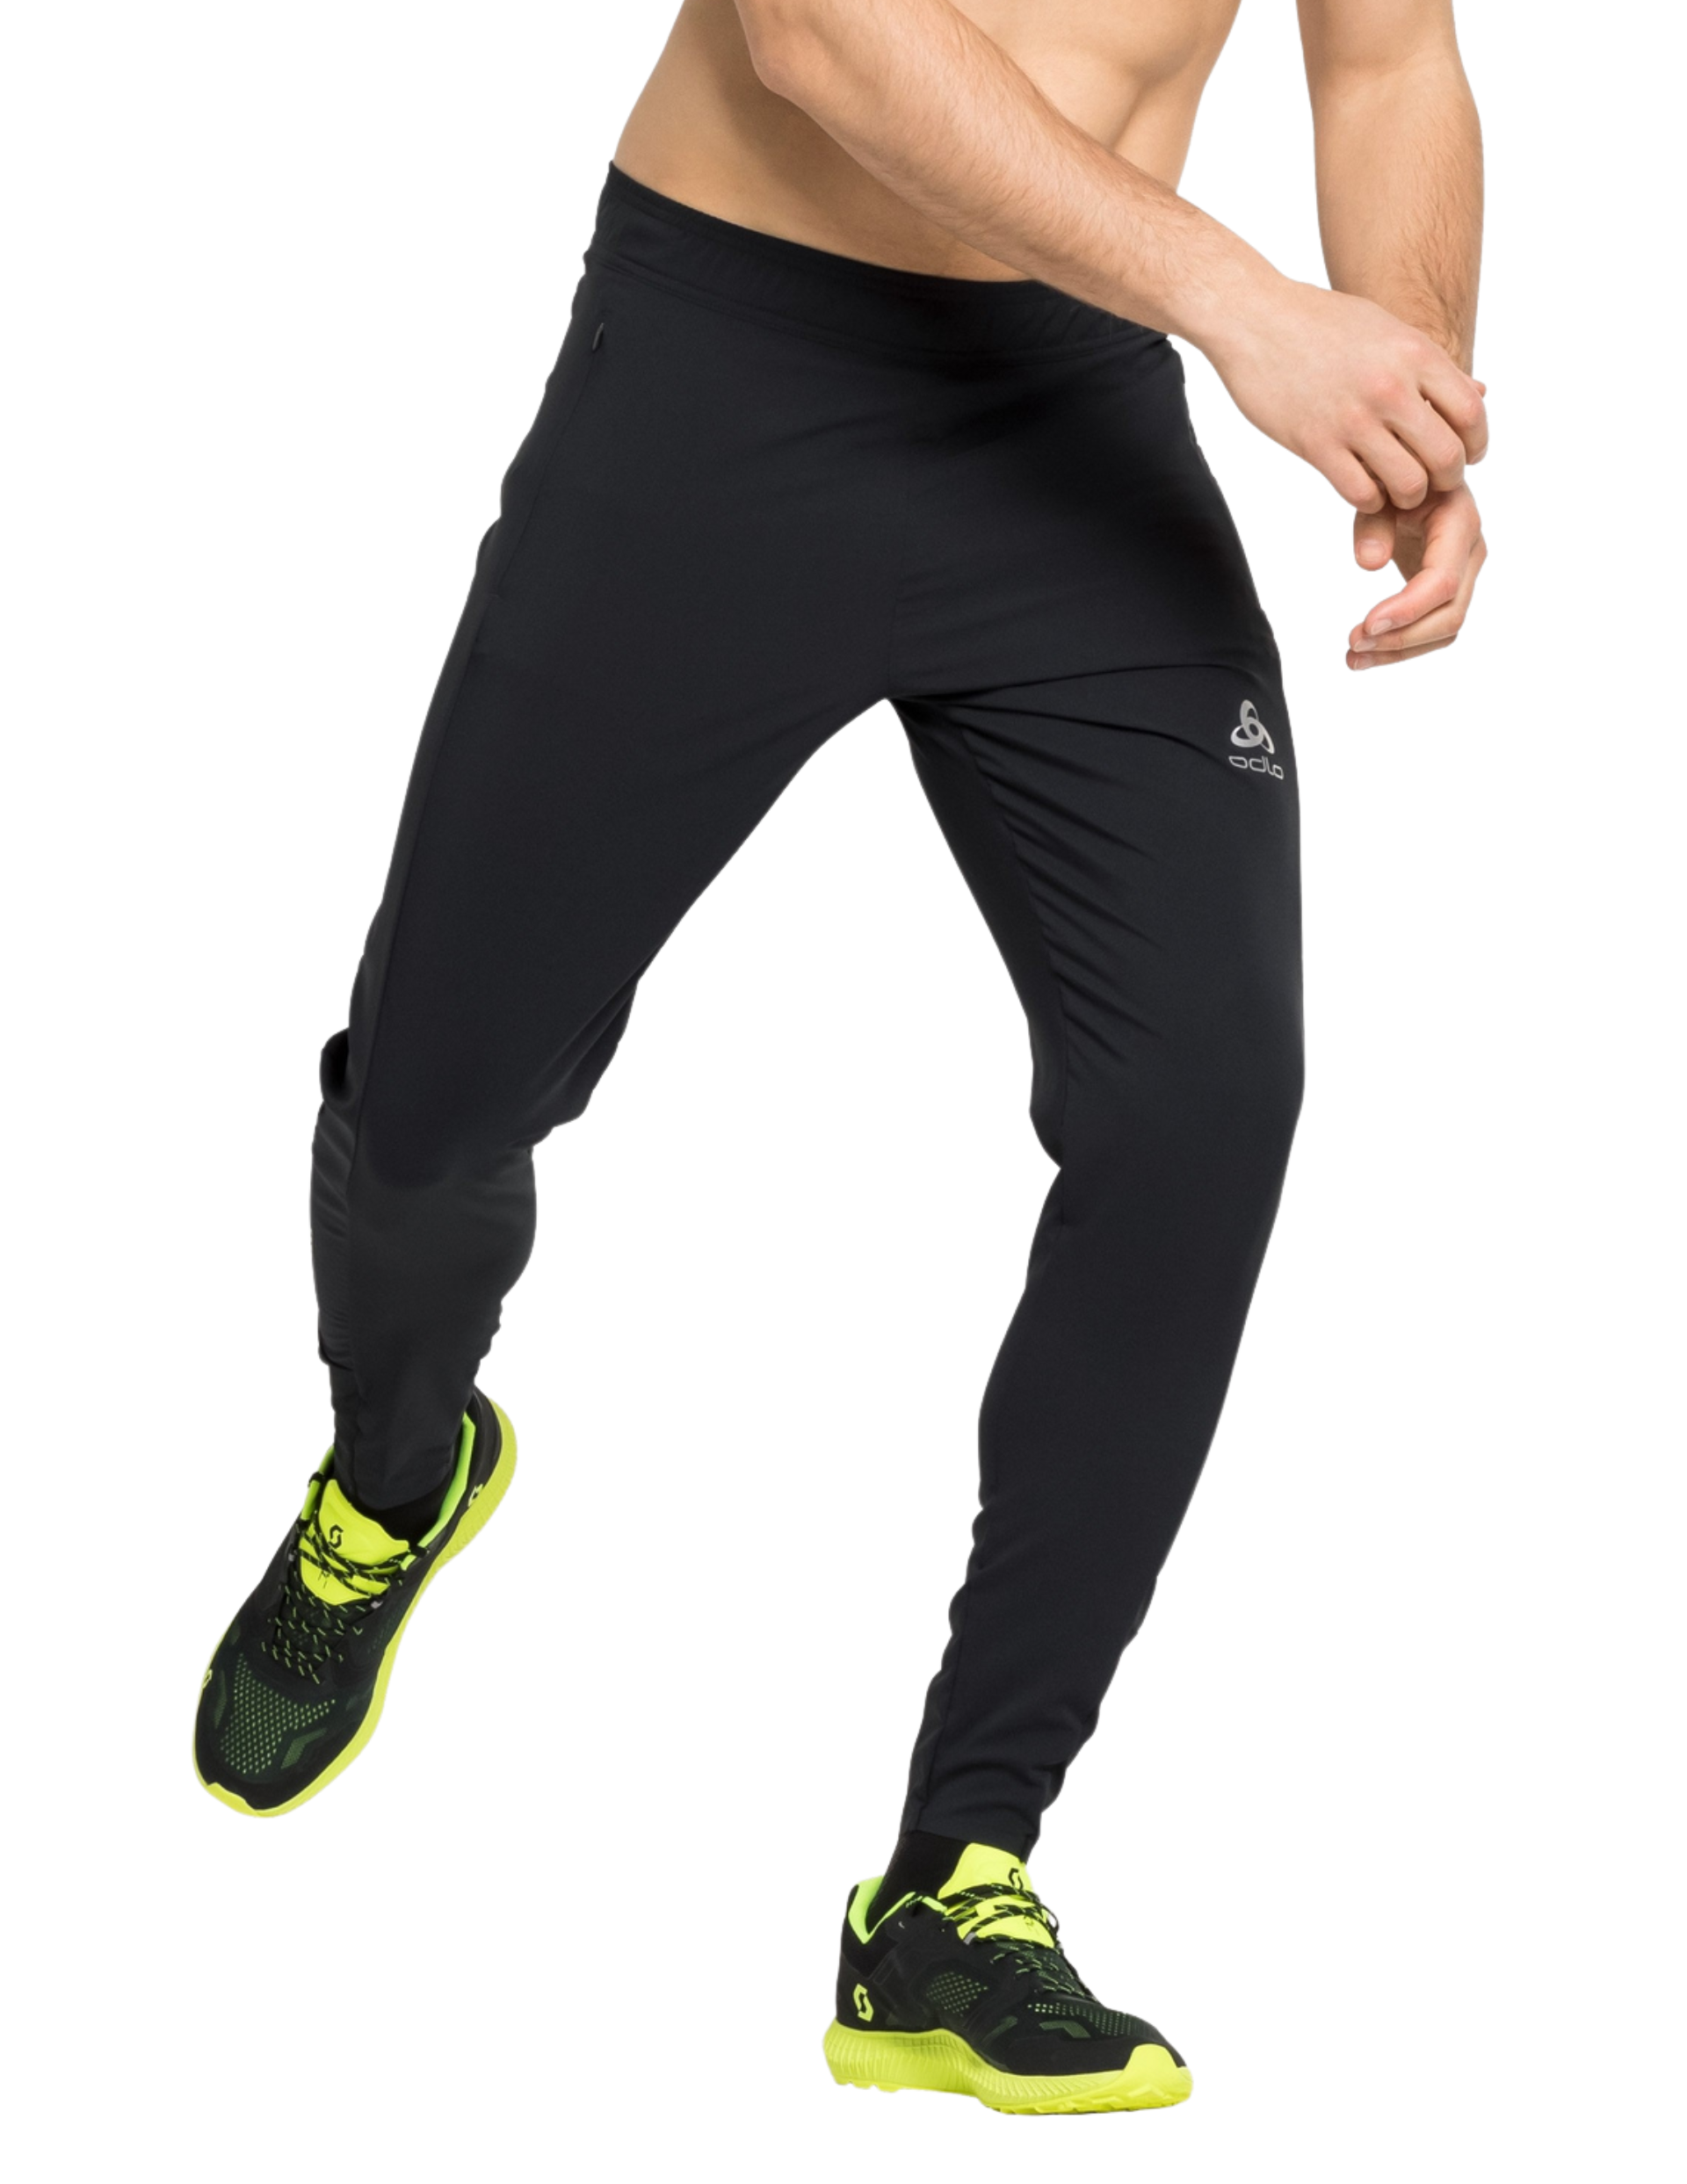 Pantalon de Running Odlo Zeroweight pour Homme : taille ajustable et 2 poches zippées latérales